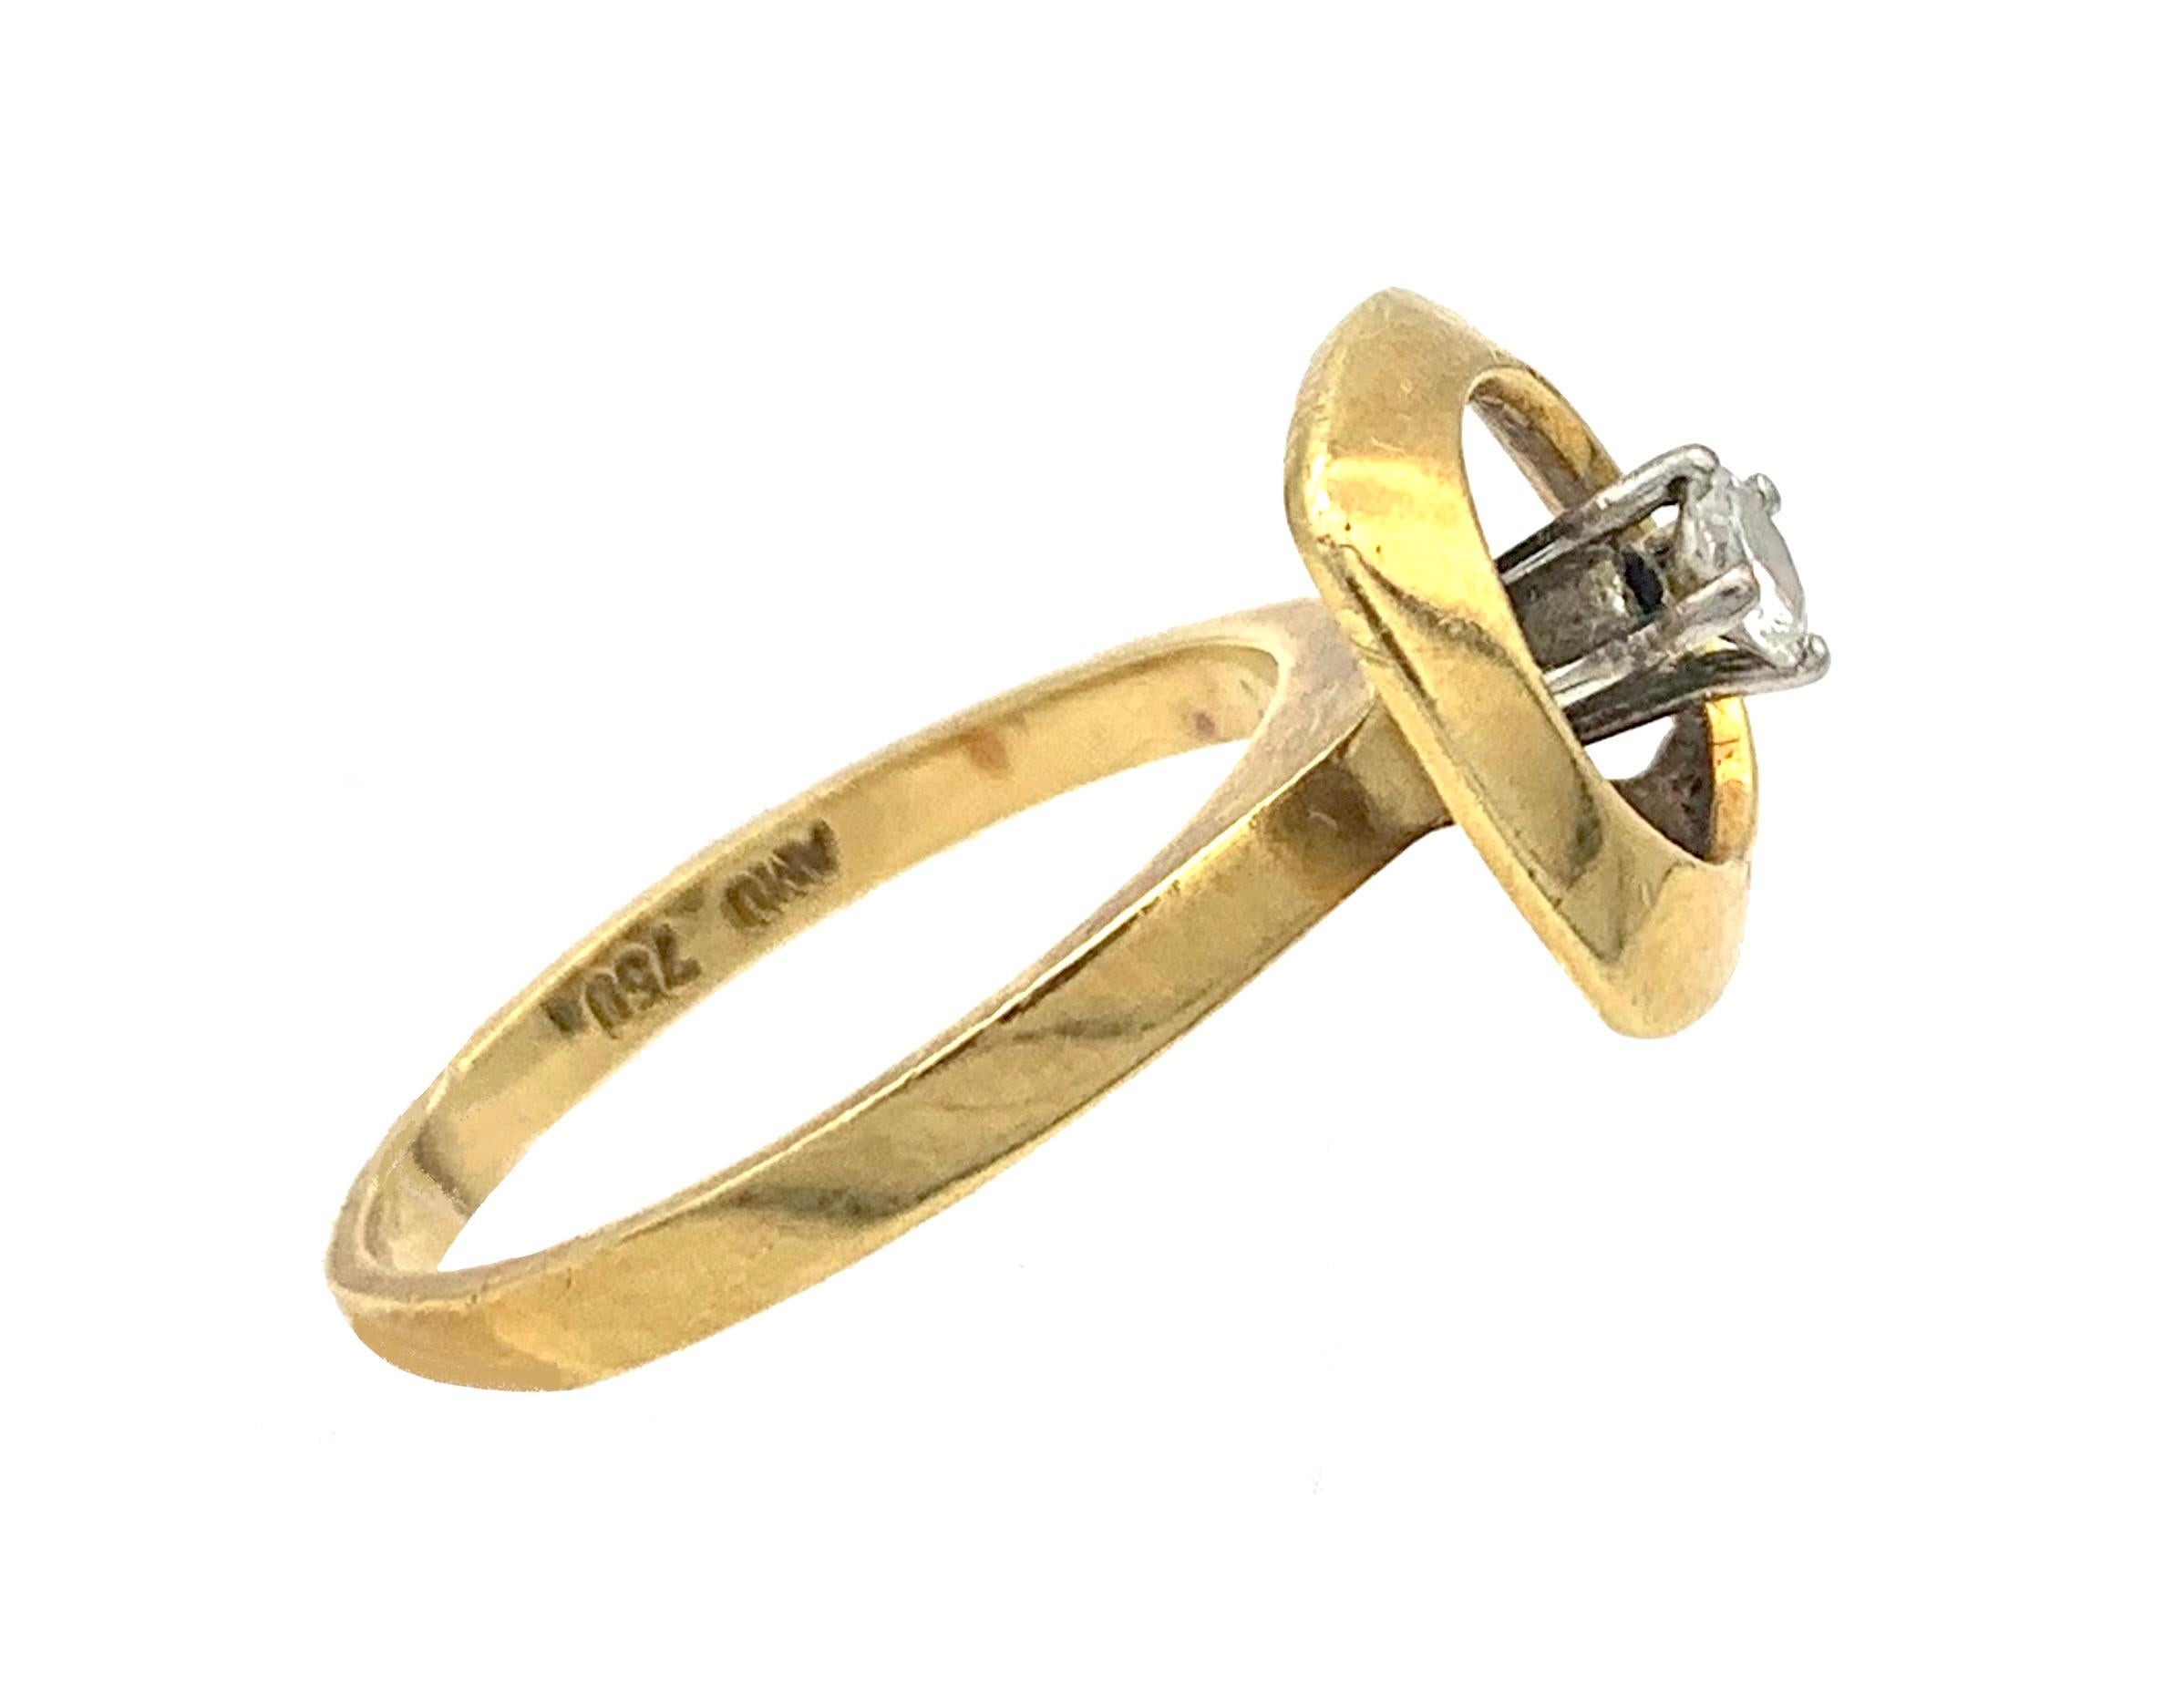 Dieser elegante Verlobungsring repräsentiert das Design dieses schwingenden  Der runde Diamant im Brillantschliff ist in einer offenen Krallenfassung aus Weißgold gefasst. Der Ring wurde aus 18 Karat Gelbgold gefertigt. Es ist mit 750 gekennzeichnet.